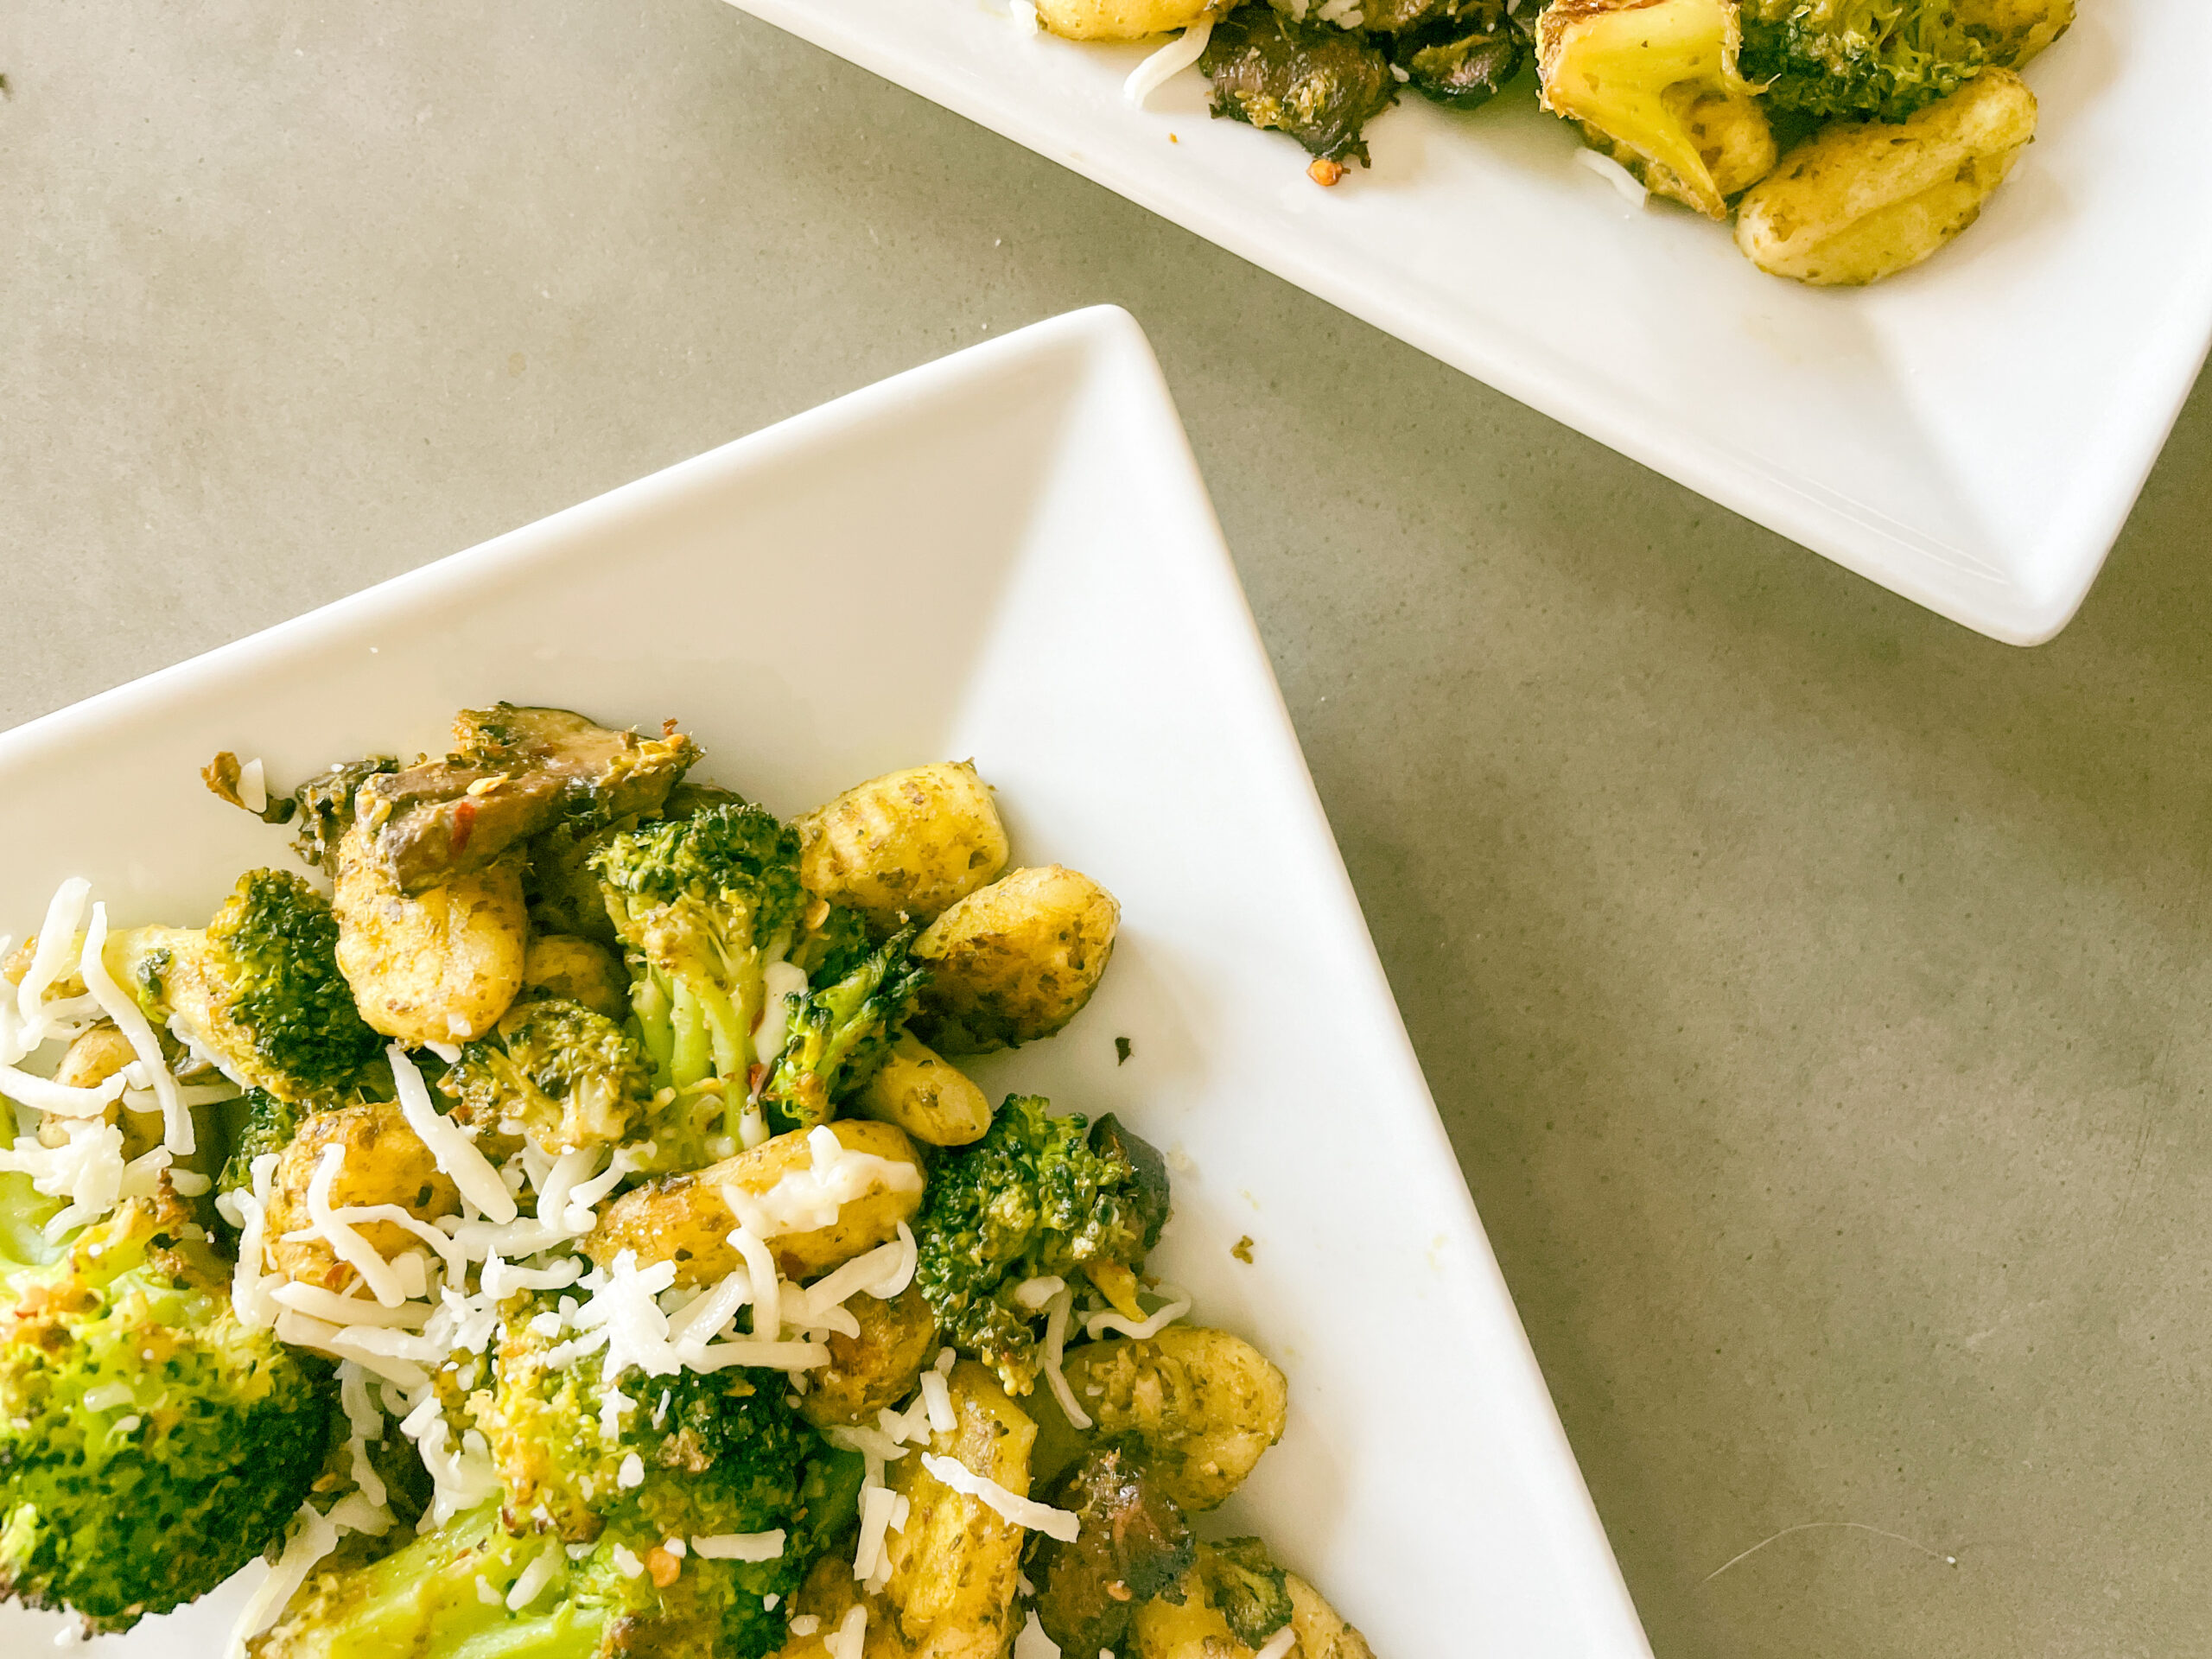 5 Ingredient One-Pan Baked Gnocchi & Broccoli (Vegan)